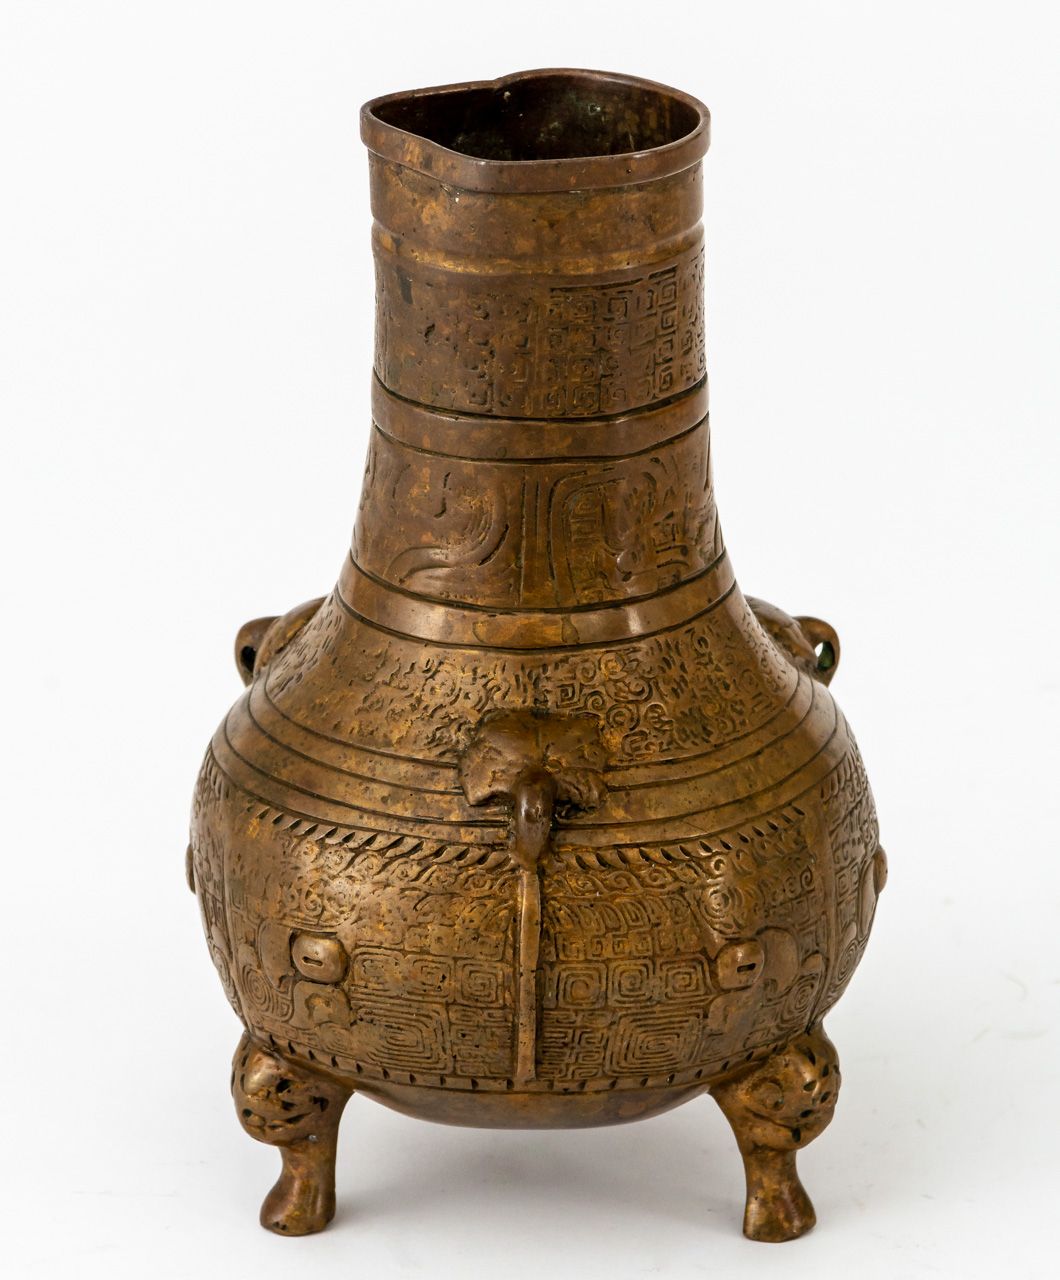 DREI-FUSS-VASE Cina, bronzo, XIX secolo o più vecchio

16,5 cm di altezza